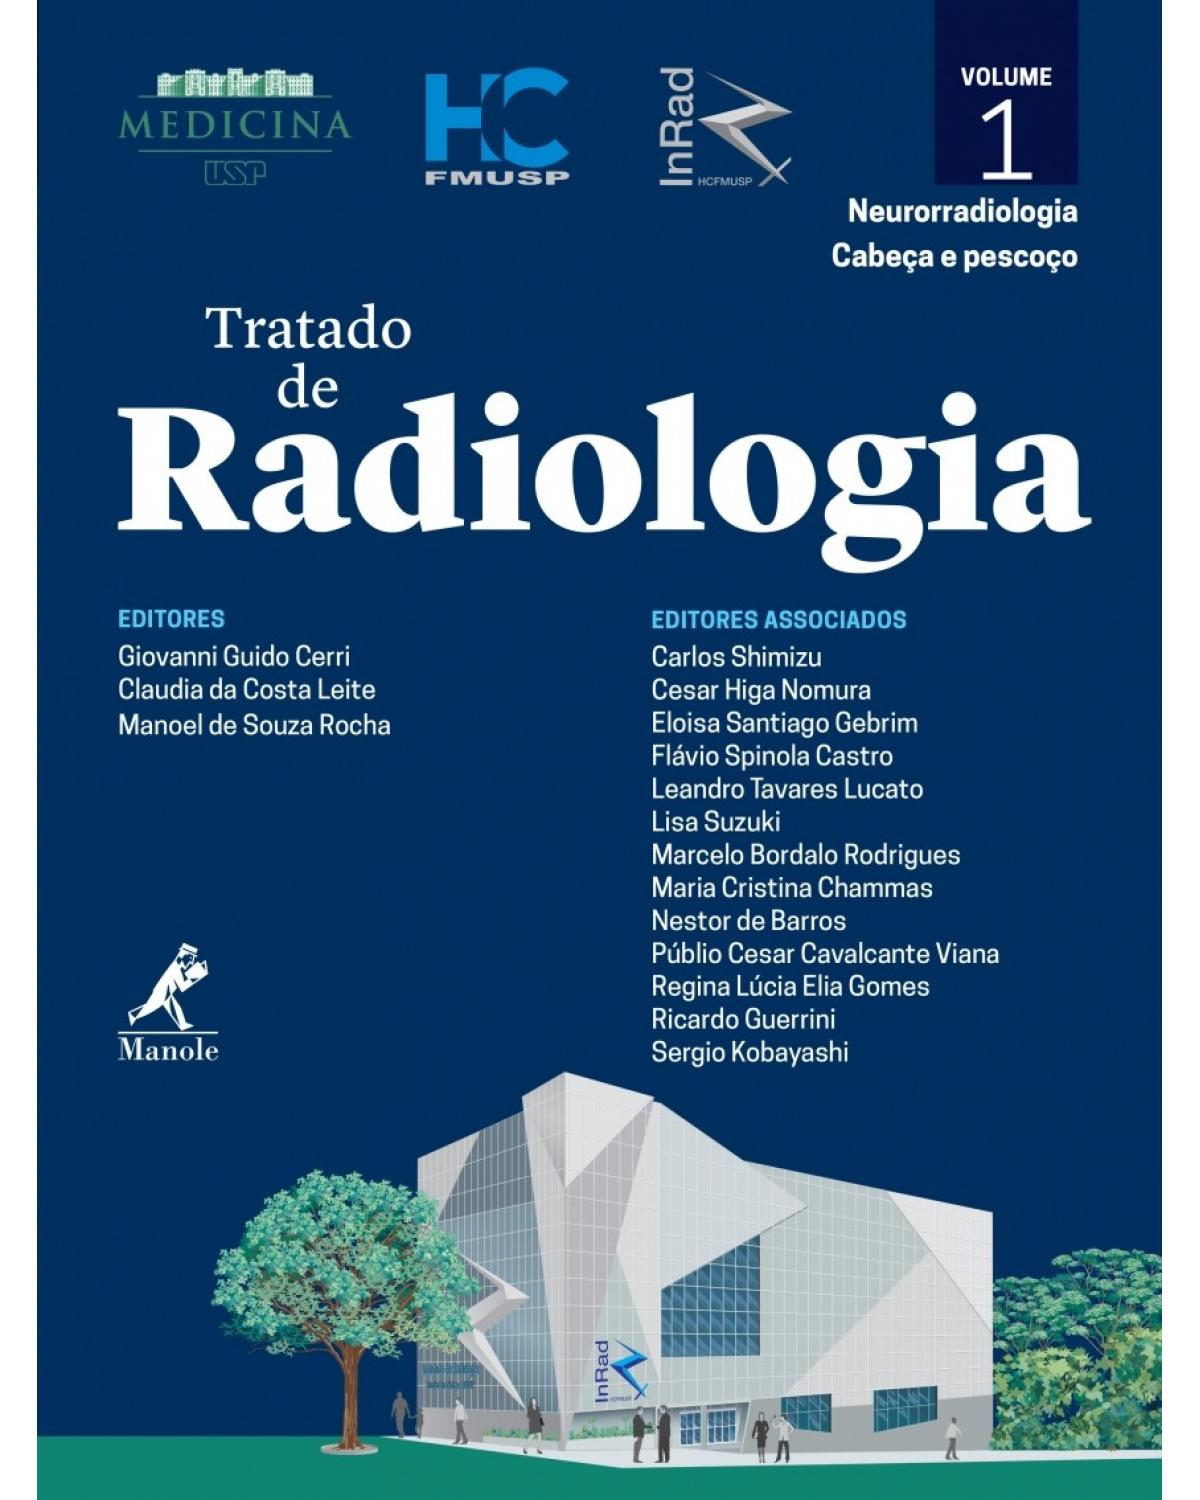 Tratado de radiologia - Volume 1: Neurorradiologia, cabeça e pescoço - 1ª Edição | 2017